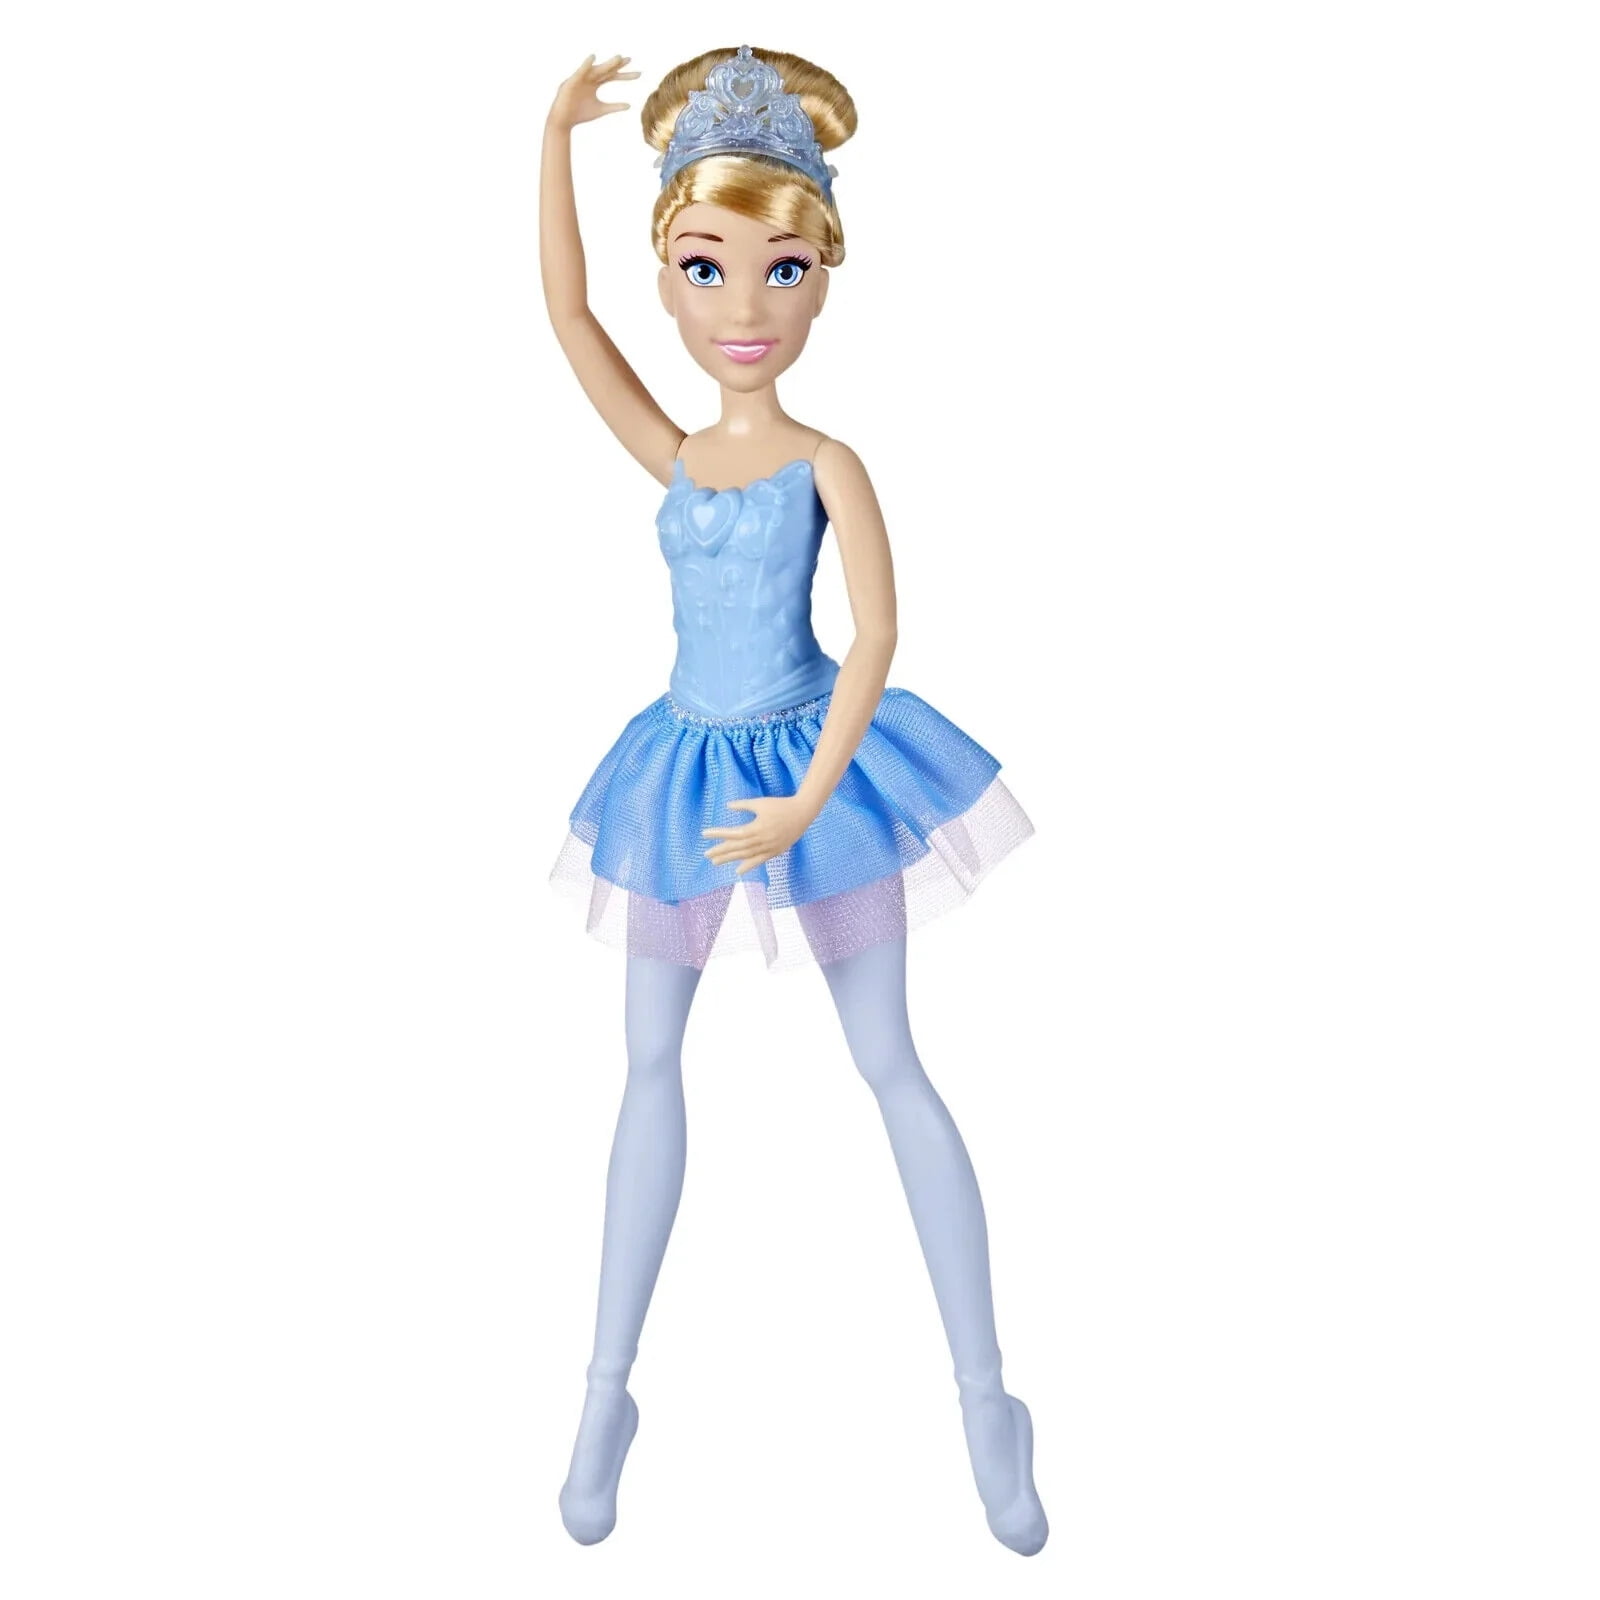 Disney Princess Ballerina Princess Cinderella, Disney Princess Toy for Kids  3 and Up